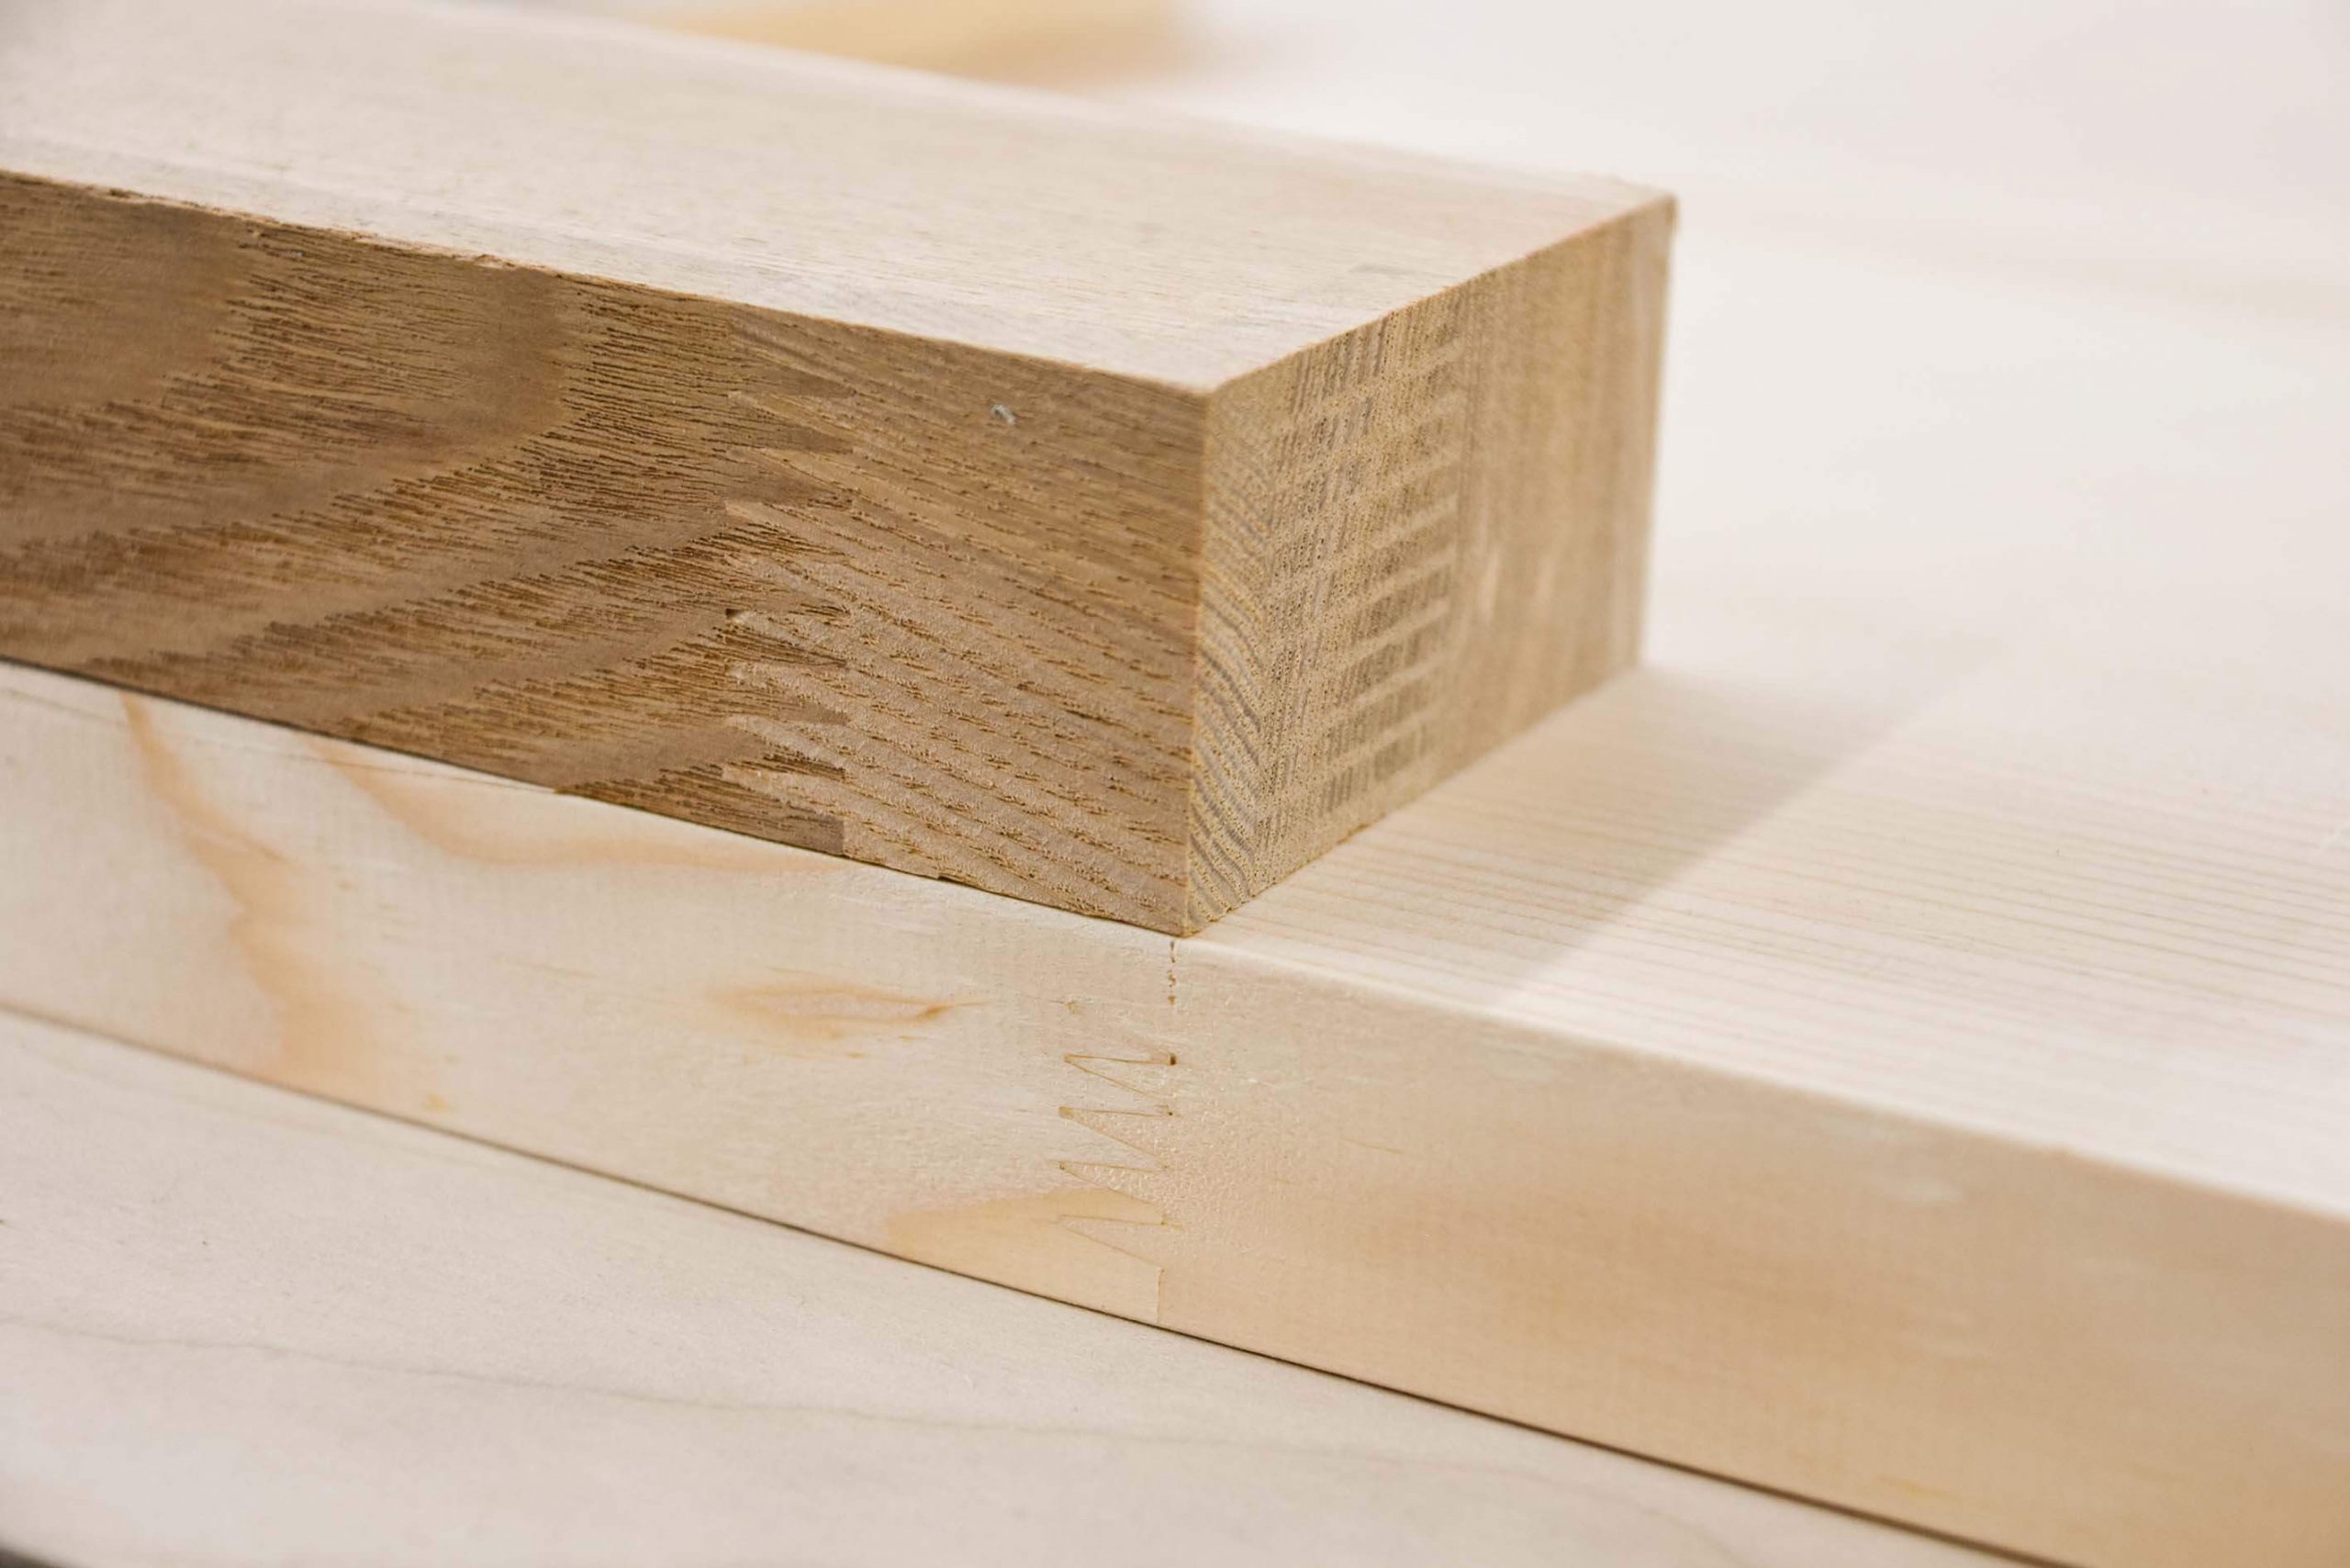 適材適所で選ぼう Diyに最適な木材の種類と特徴の紹介 Makit メキット By Diy Factory